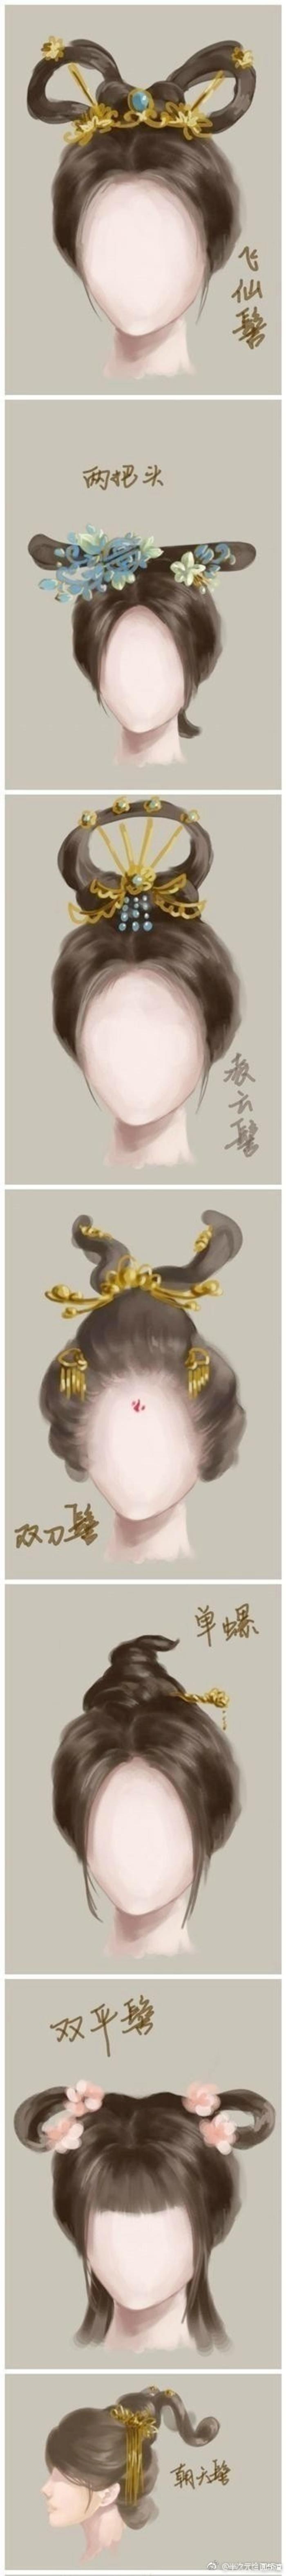 古代女子发型50例，宫廷牡丹头、民间双平髻…等发型，顺带涨姿势  插画图片壁纸